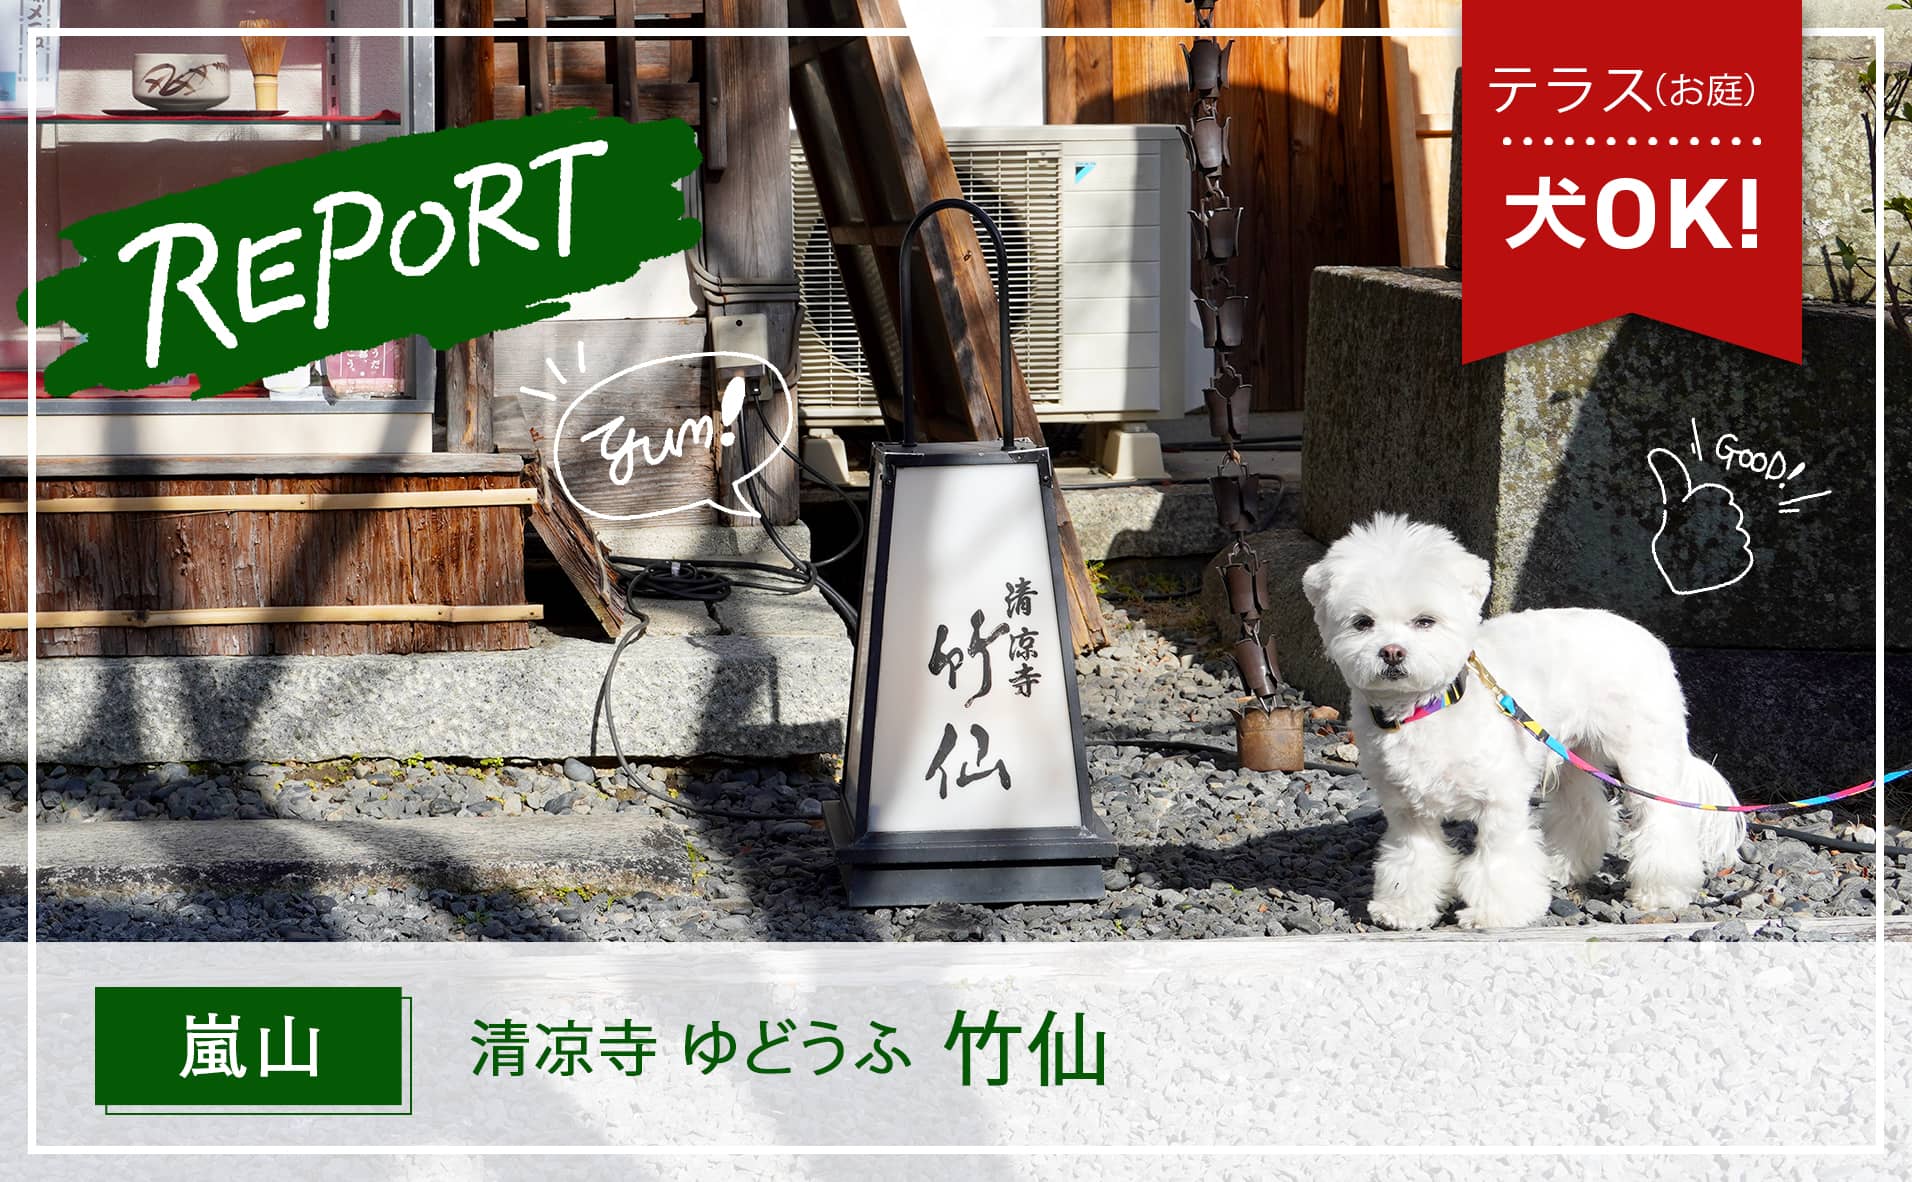 【嵐山】京都「清凉寺」寺院内で犬とおいしい京料理・湯豆腐が味わえる『竹仙』